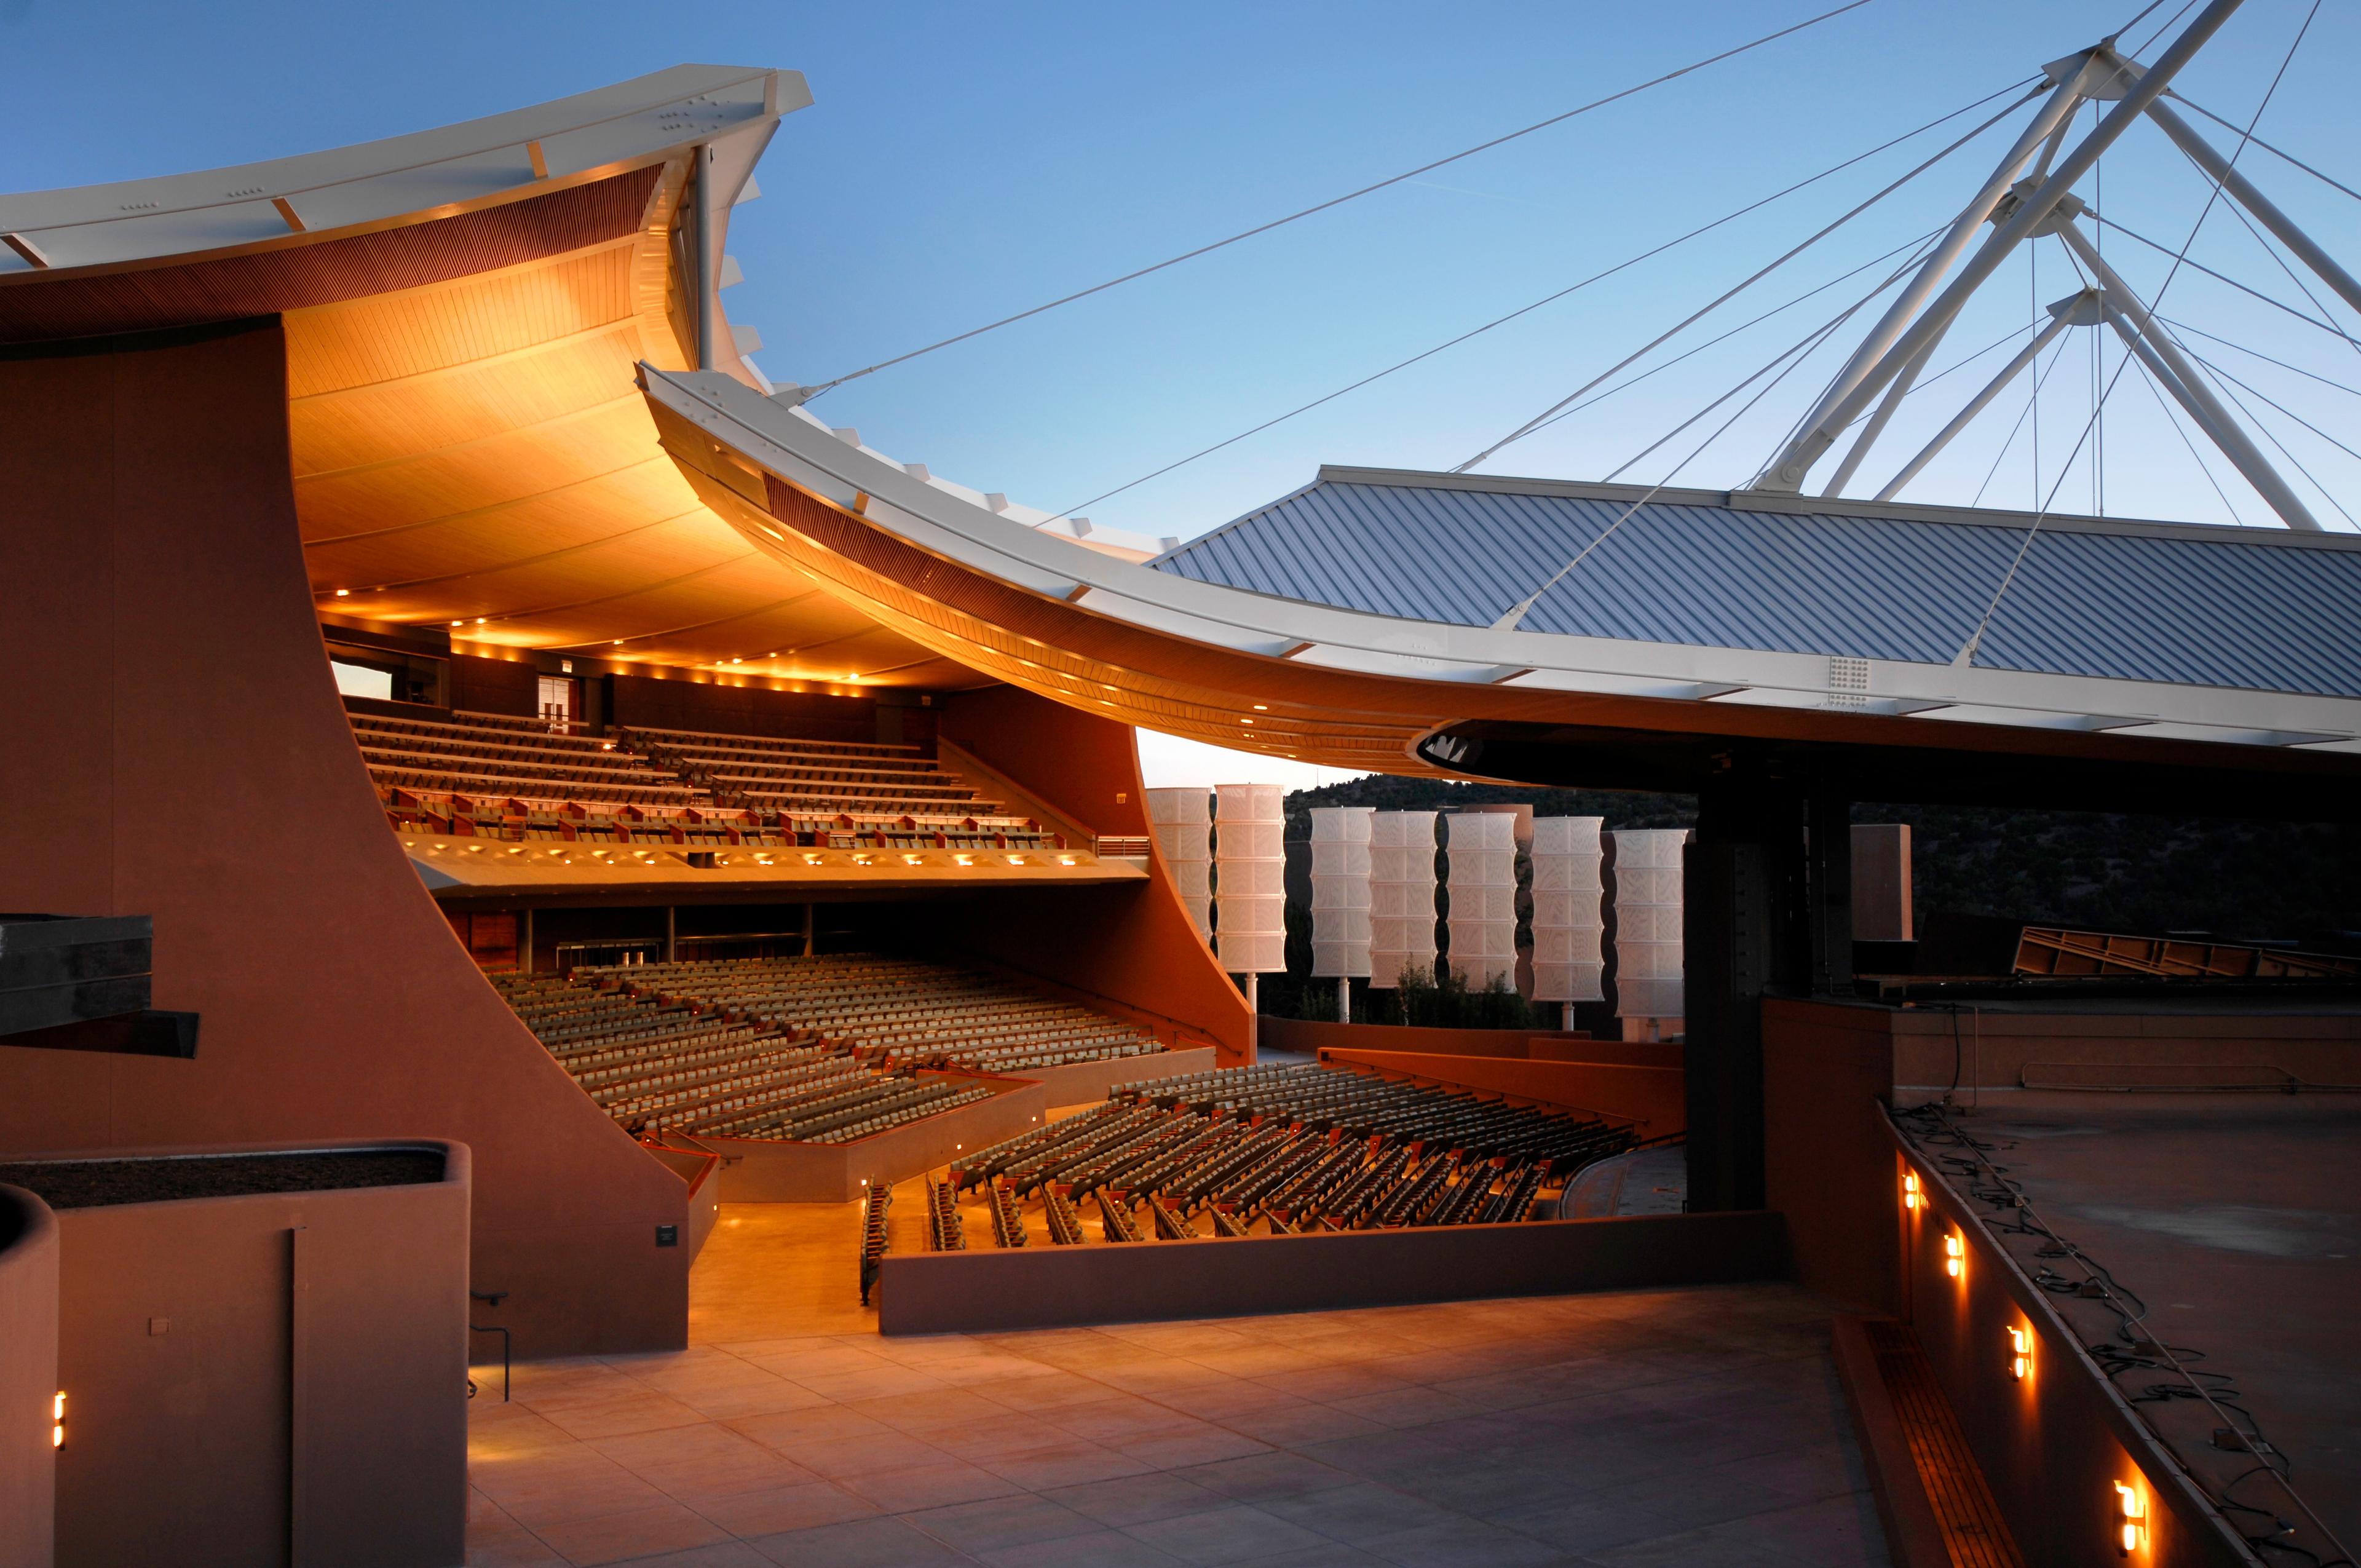 Photo: Santa Fe Opera Festival opera house, New Mexico